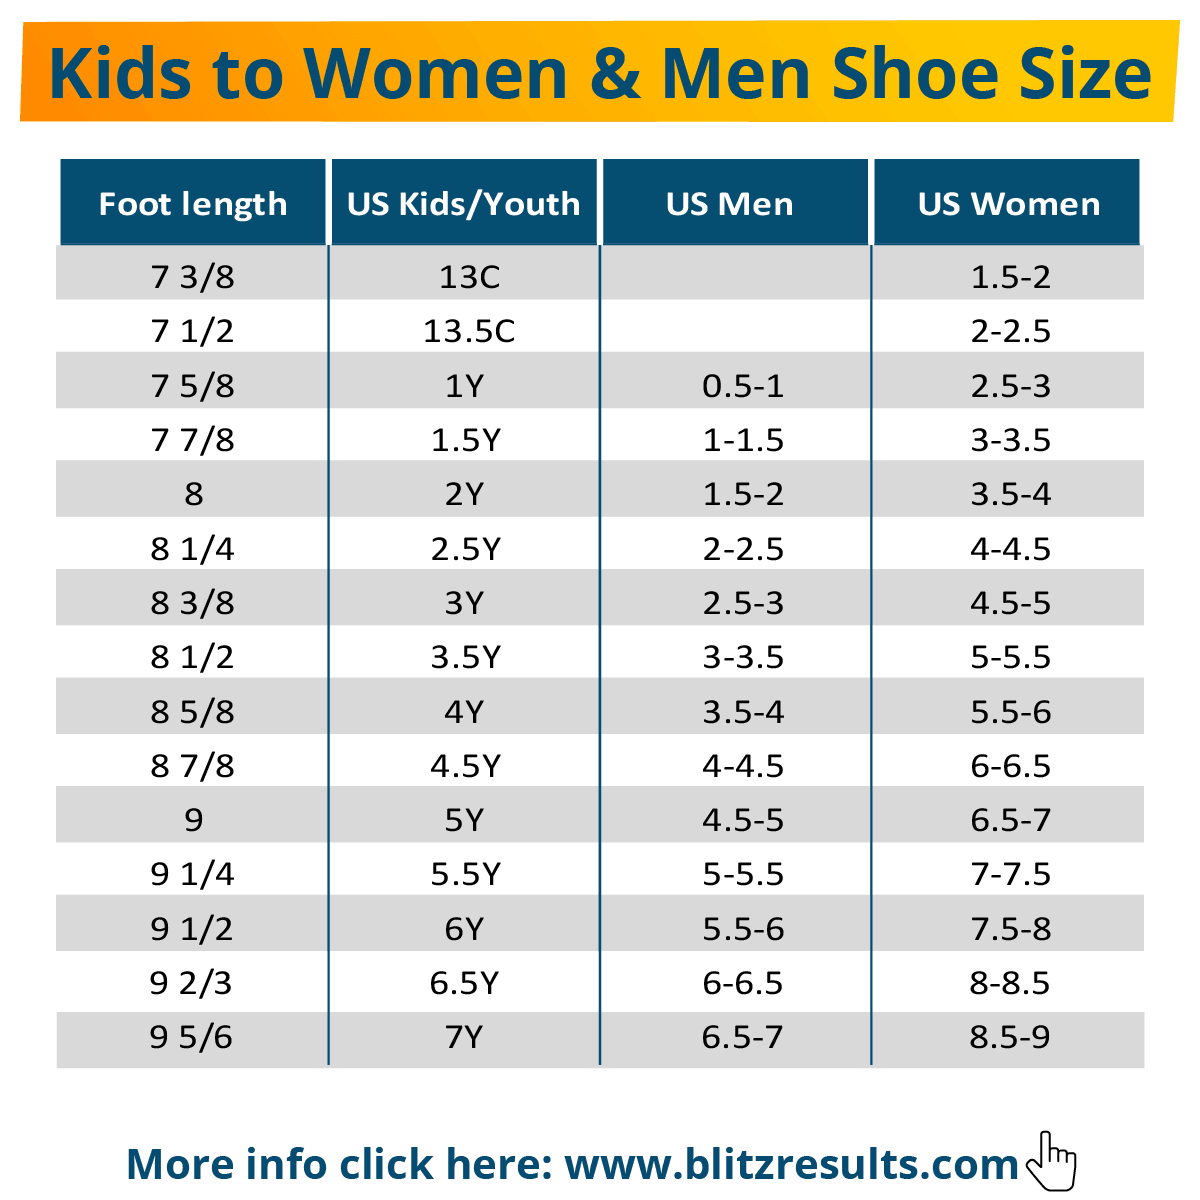 5y Shoe Size Conversion In Women's Shoe Size